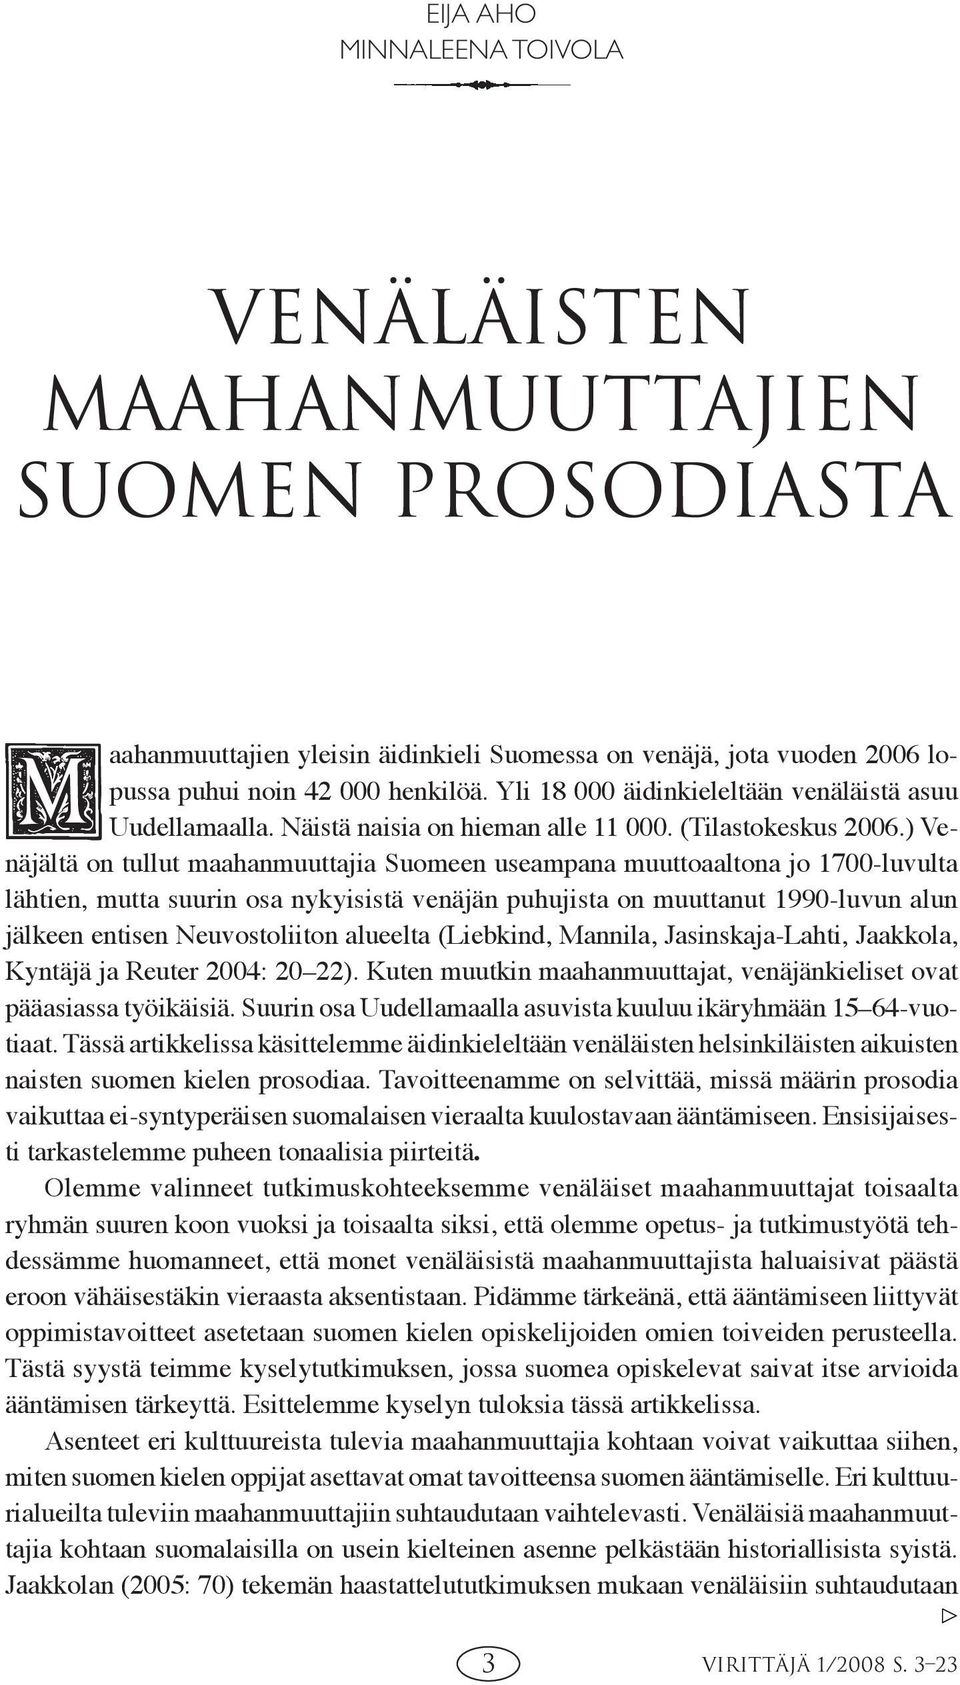 ) Venäjältä on tullut maahanmuuttajia Suomeen useampana muuttoaaltona jo 1700-luvulta lähtien, mutta suurin osa nykyisistä venäjän puhujista on muuttanut 1990-luvun alun jälkeen entisen